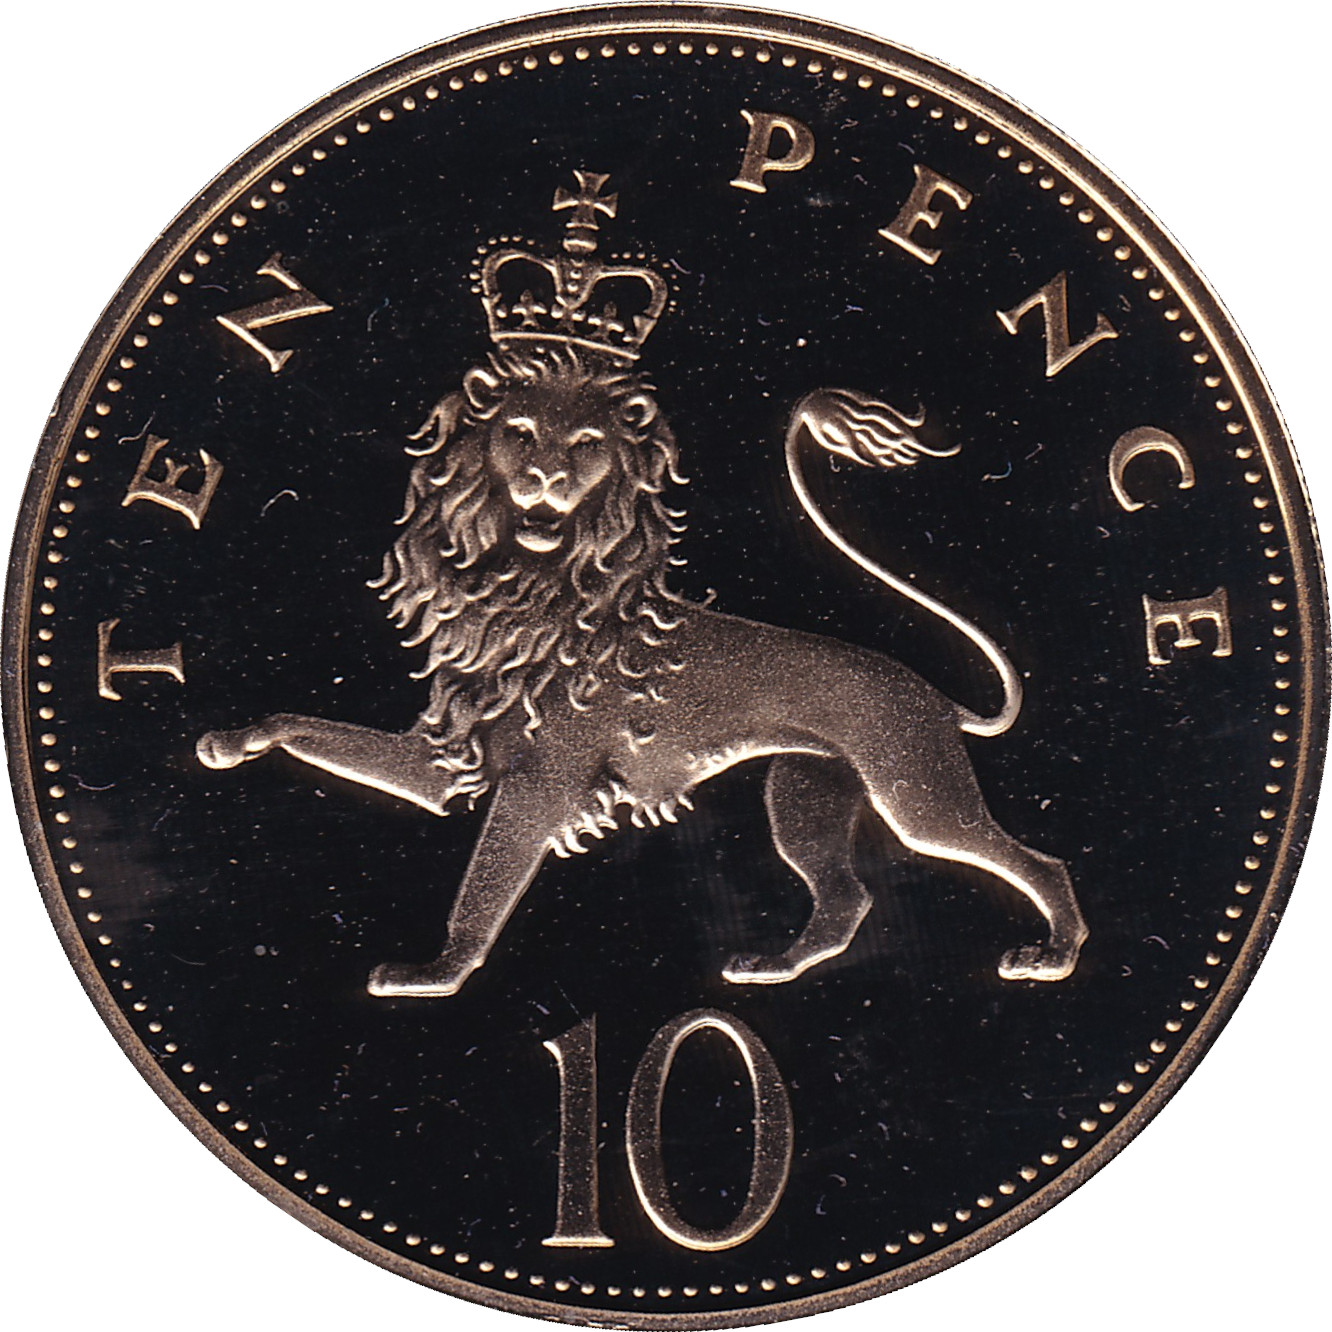 10 pence - Elizabeth II - Young bust